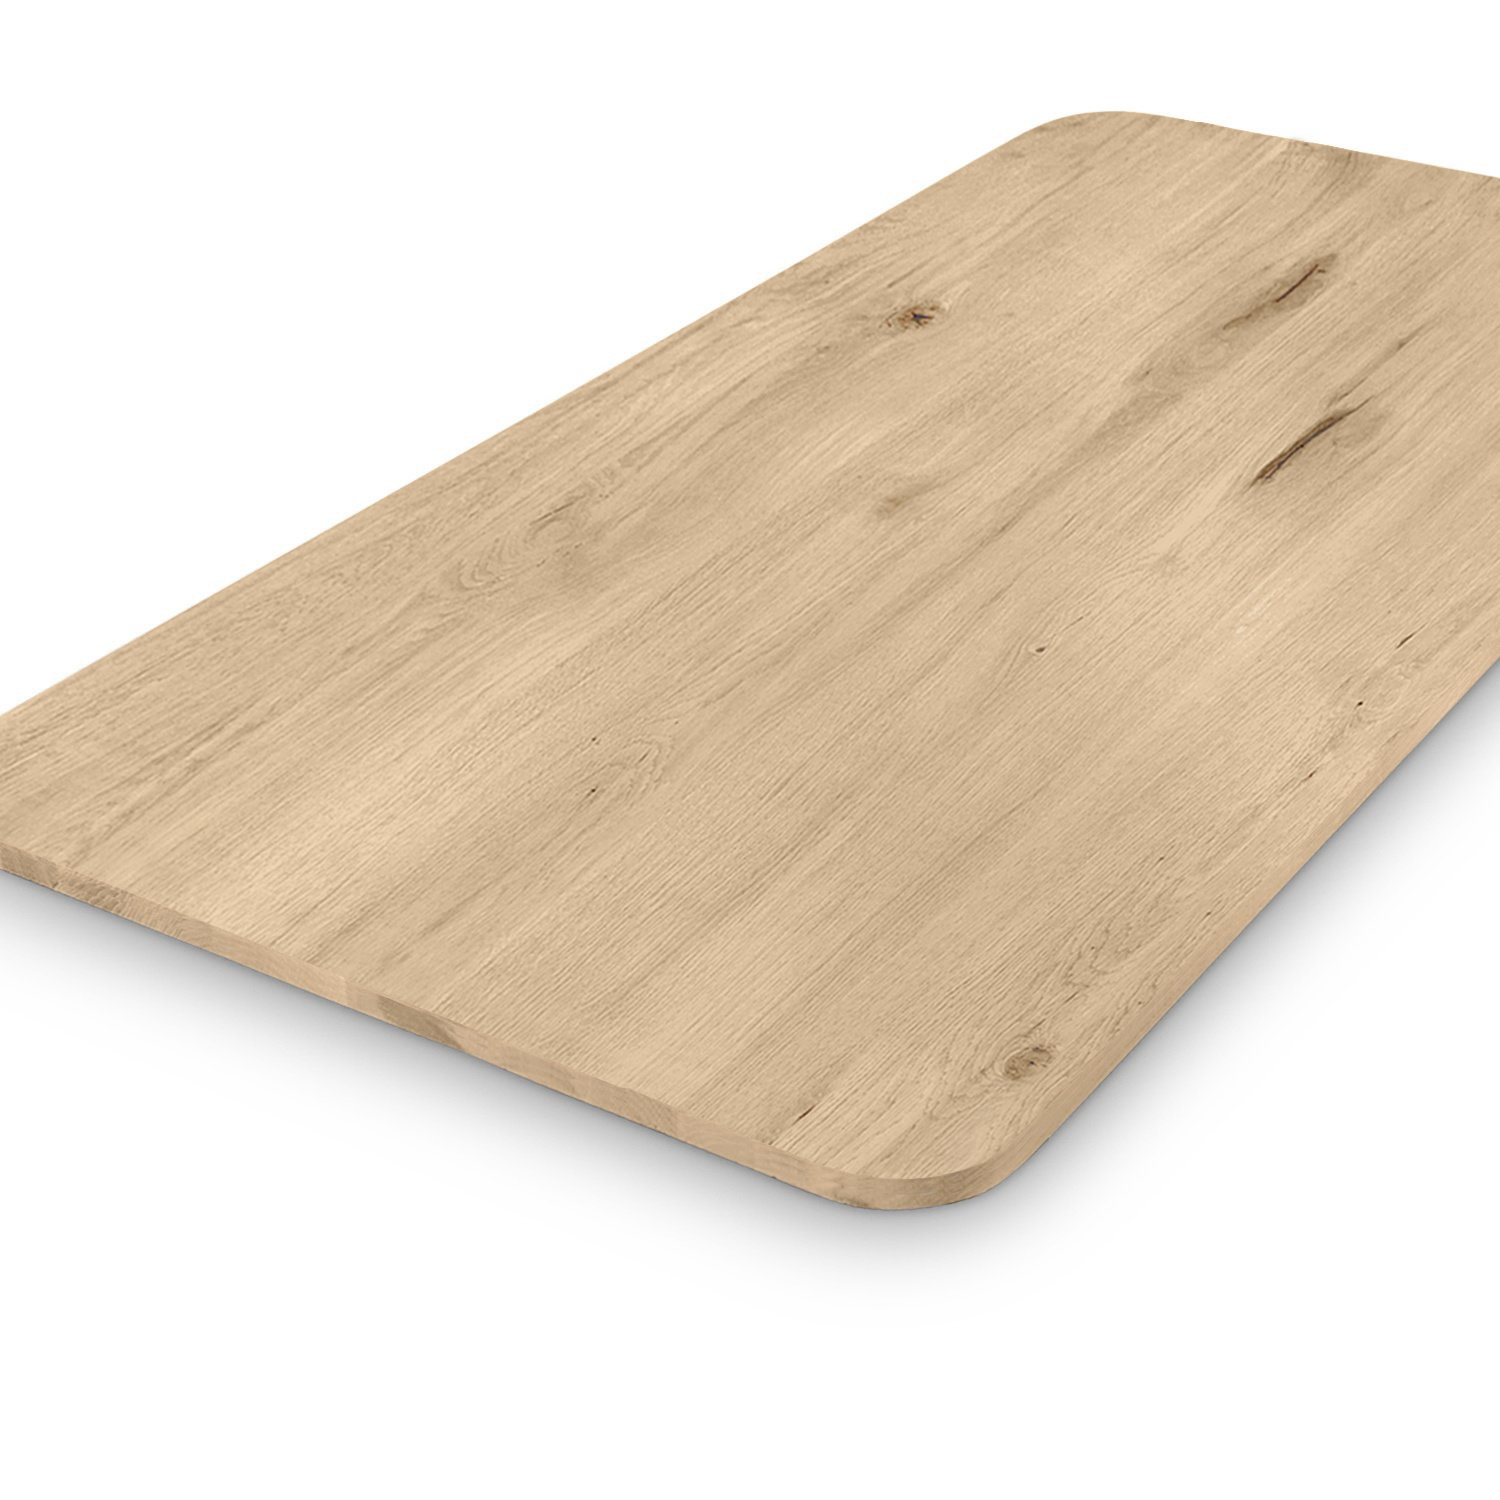  Eiken tafelblad met ronde hoeken - 2,5 cm dik (1-laag) - Diverse afmetingen - extra rustiek Europees eikenhout - met extra brede lamellen (circa 14-20 cm) - verlijmd kd 8-12%